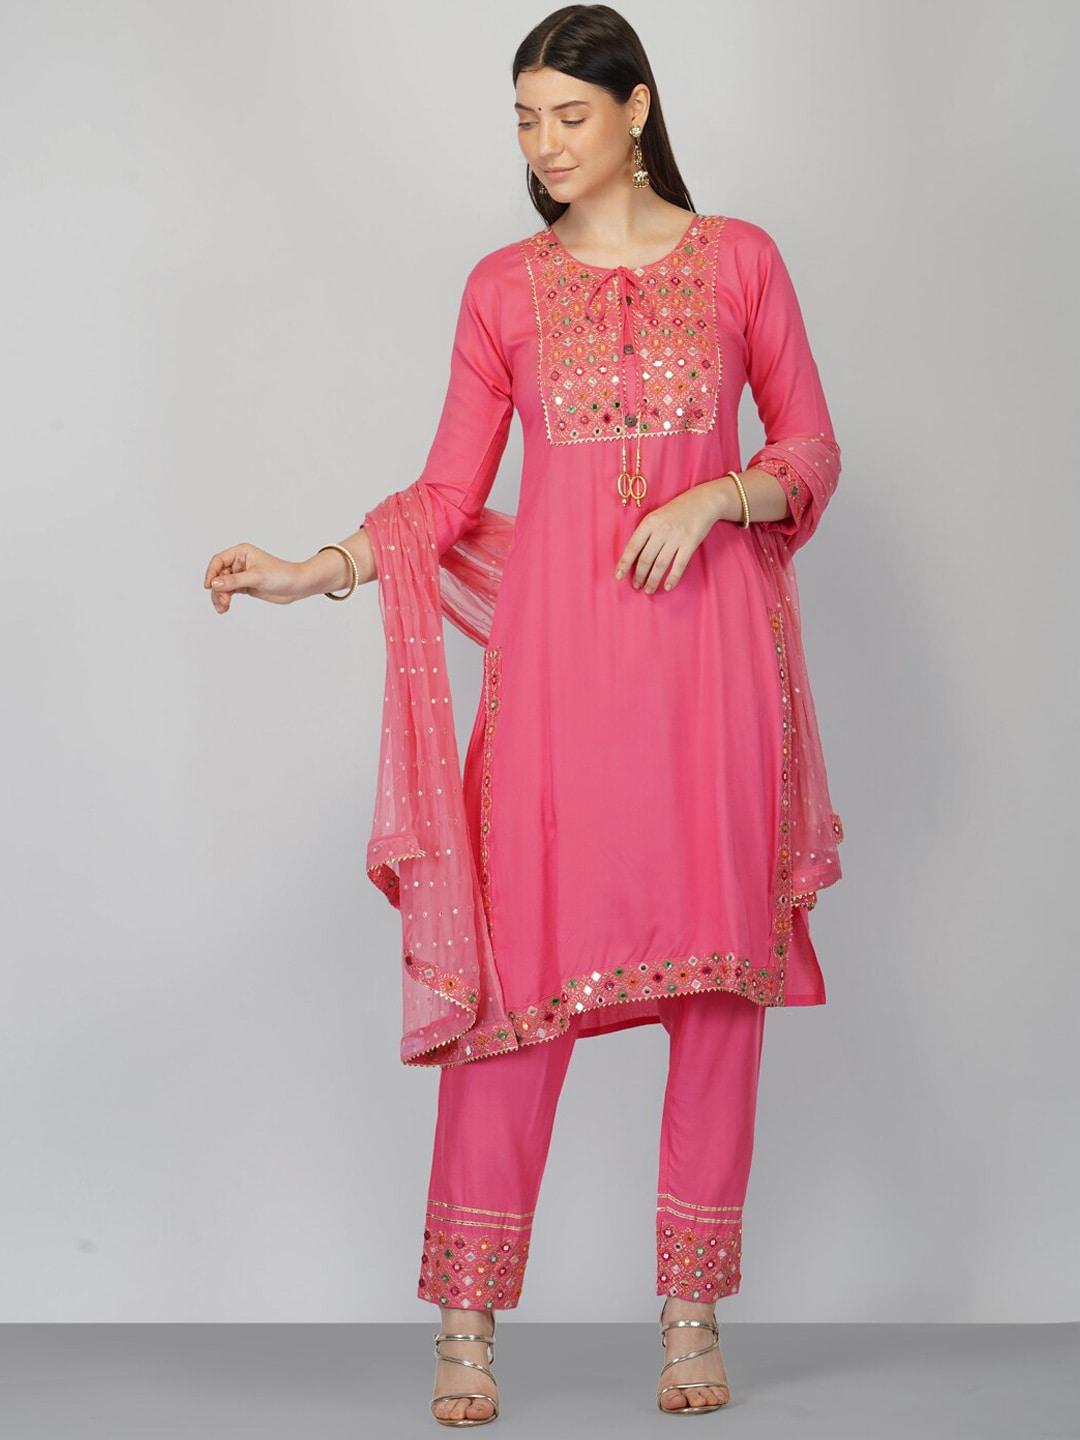 ziva fashion women pink yoke design panelled kurta set with dupatta